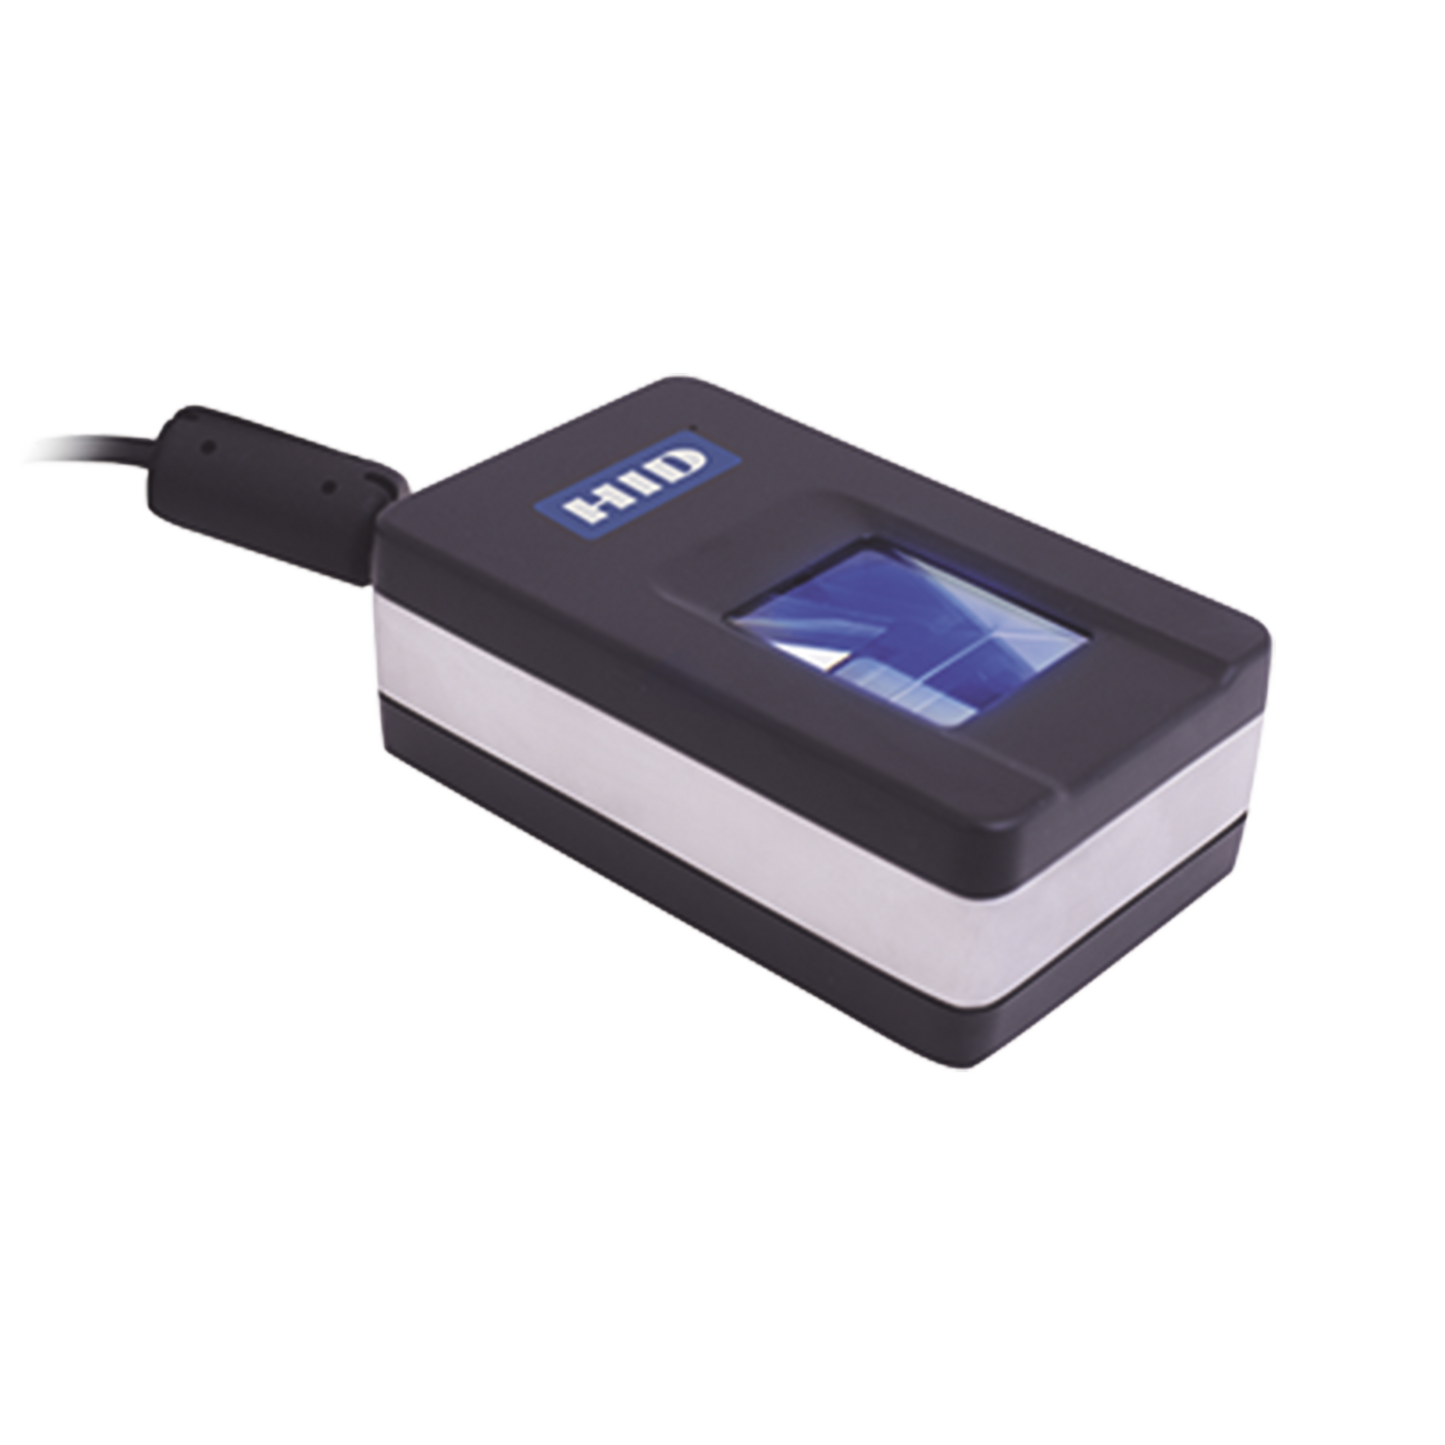 Lector USB para Autentificación Unidactilar 20 x 25 mm/ Incluye SDK para Desarrollos/ 500 DPI